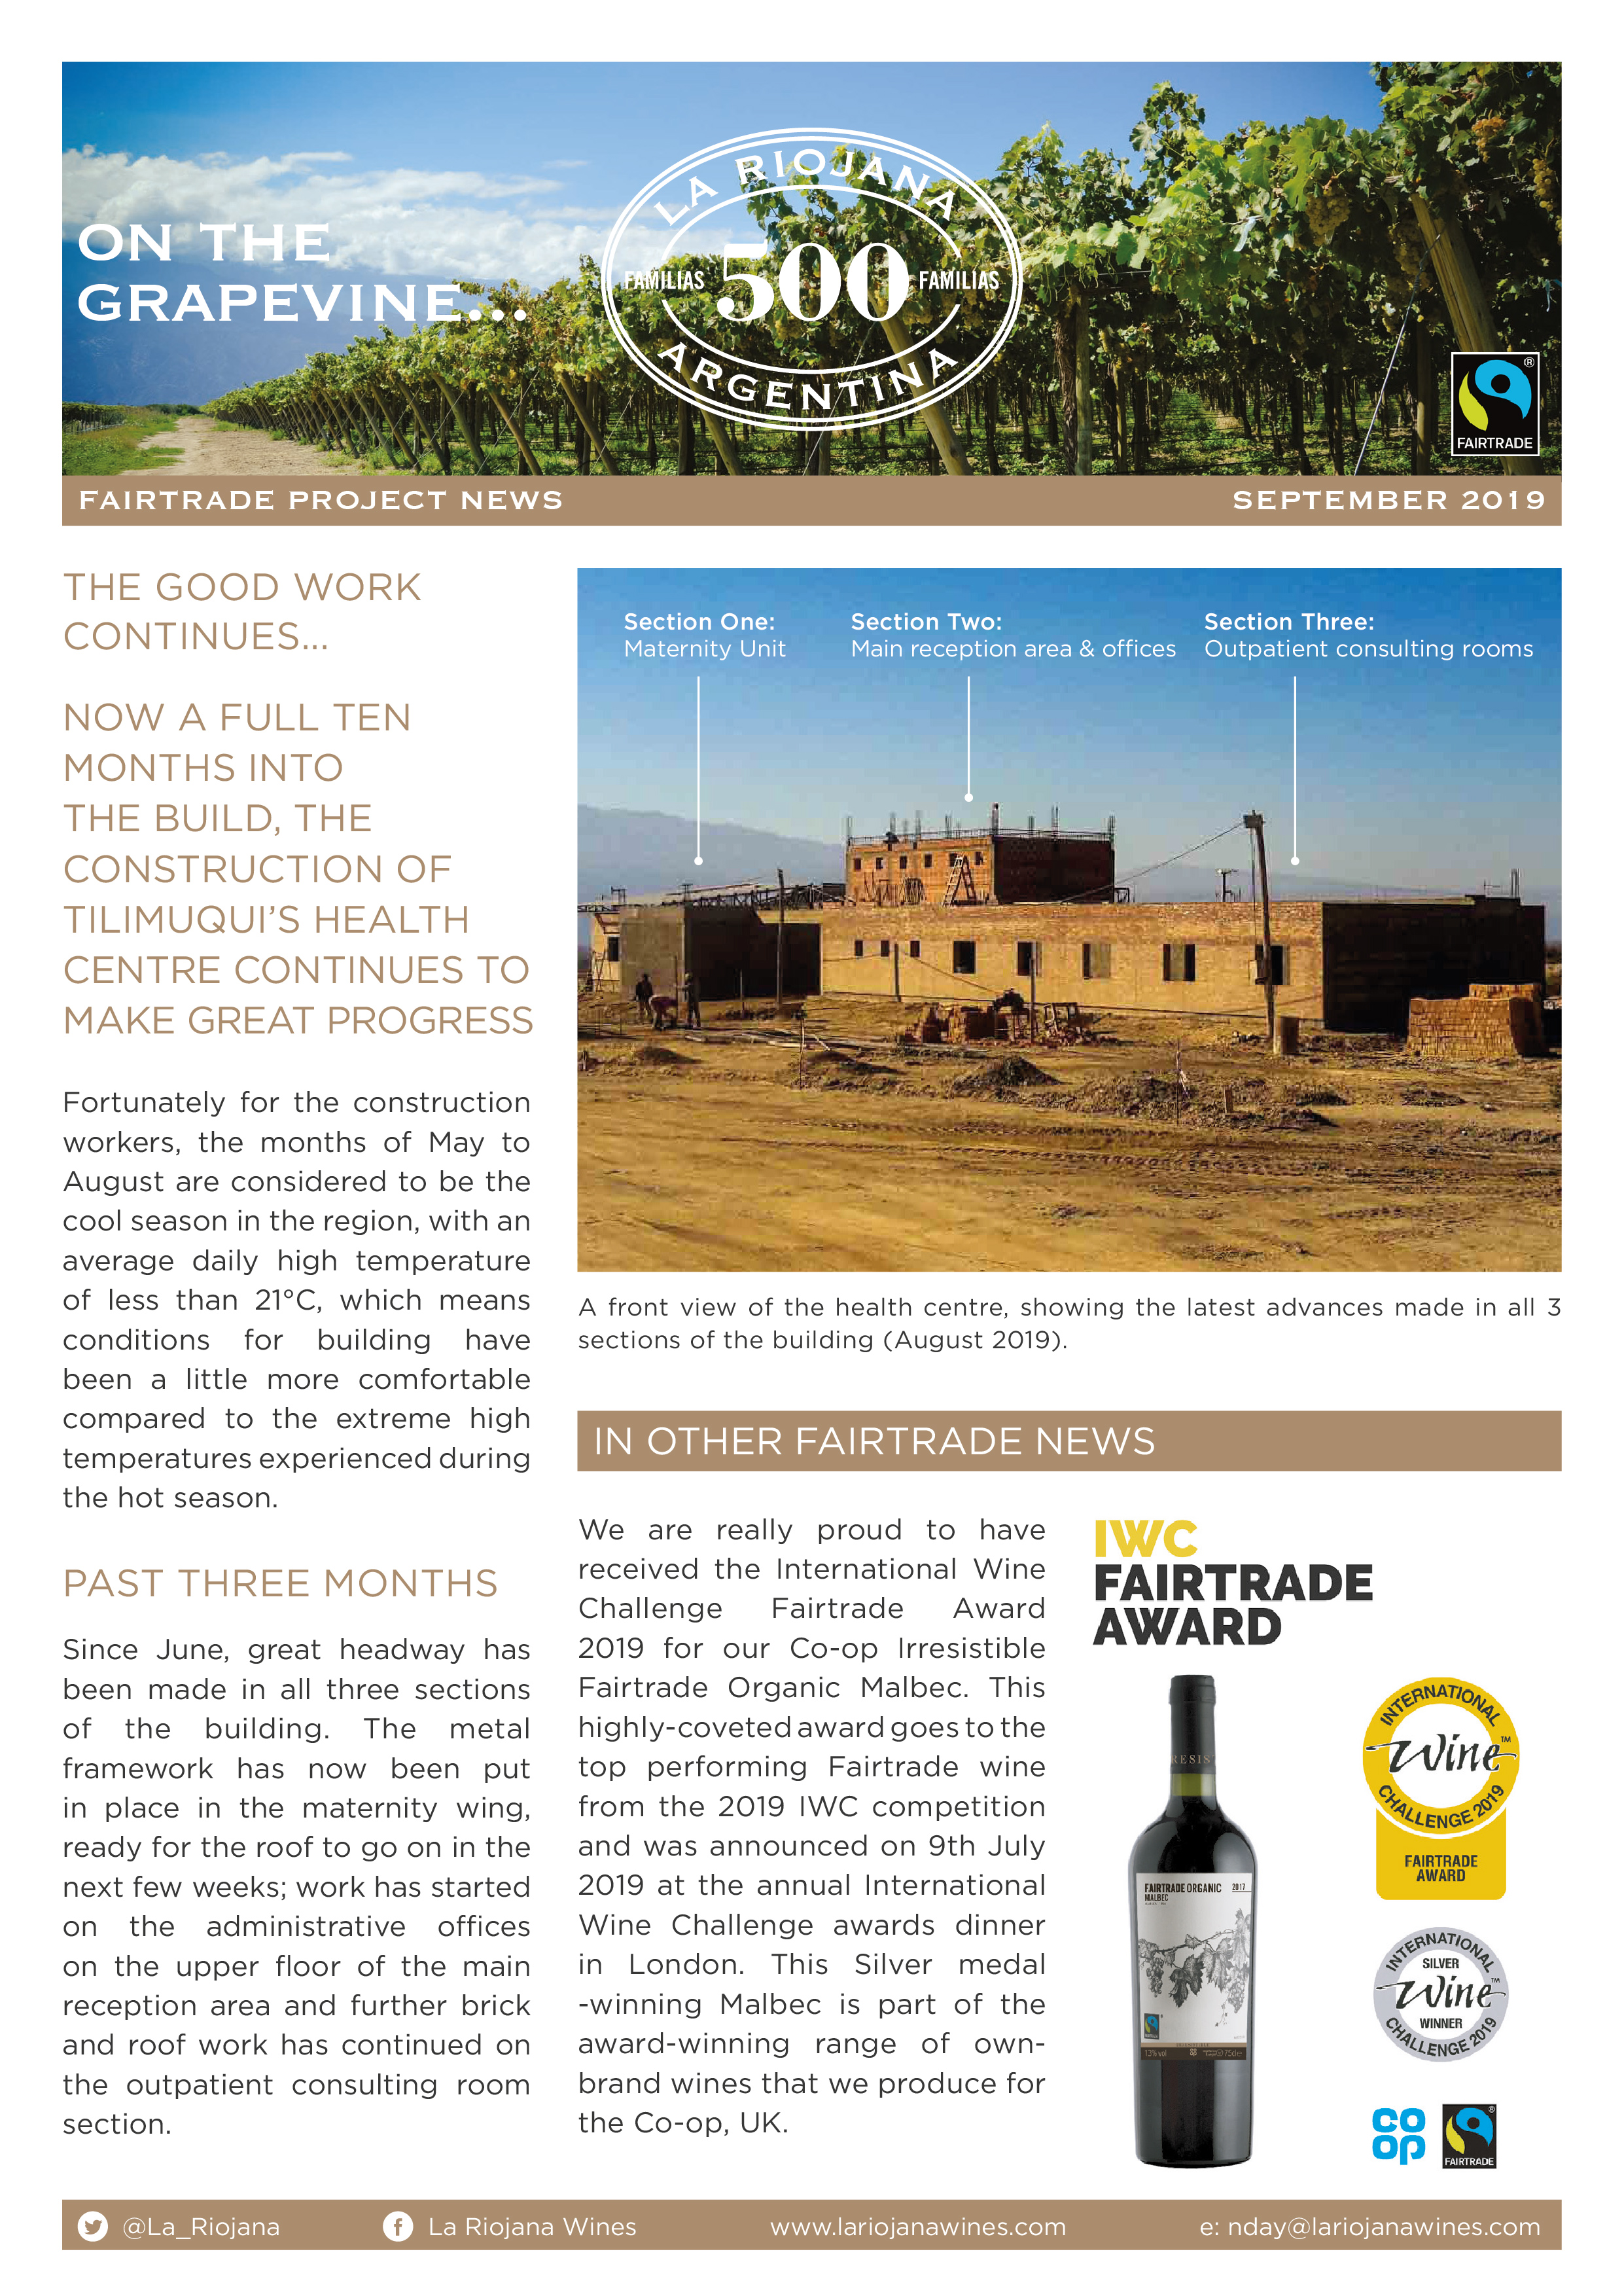 La Riojana - Fairtrade Project News - September 2019-01.jpg